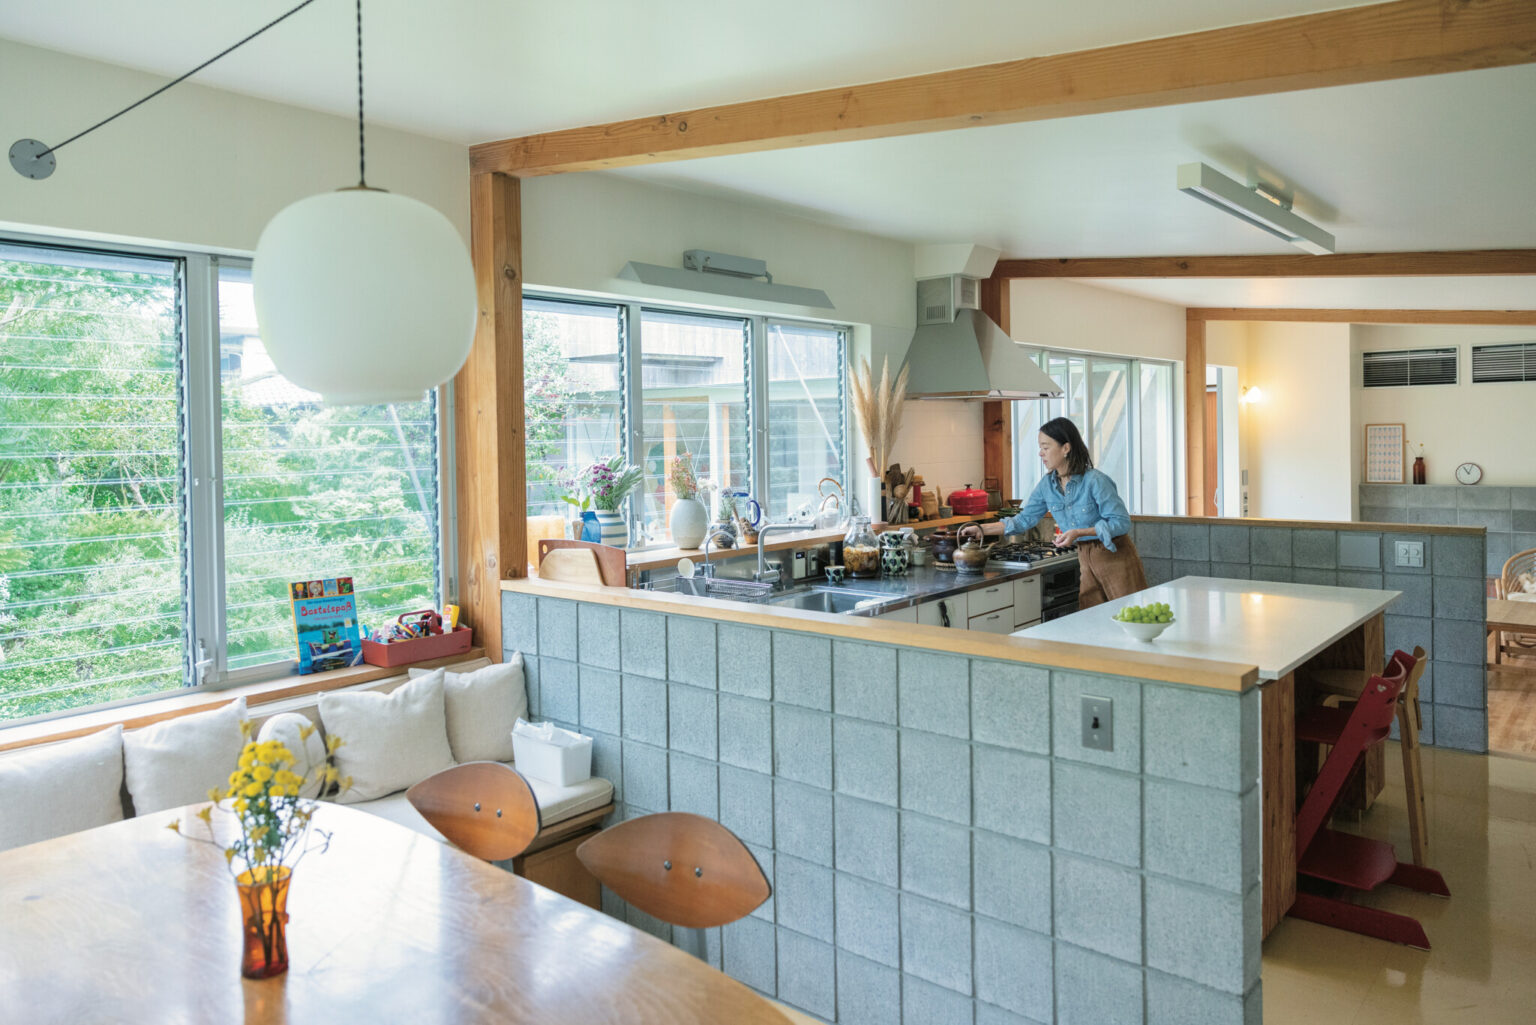 ギャラリーマネージャー・関田四季さんのお宅は、 室内も外も見通せる眺めのいいキッチン。